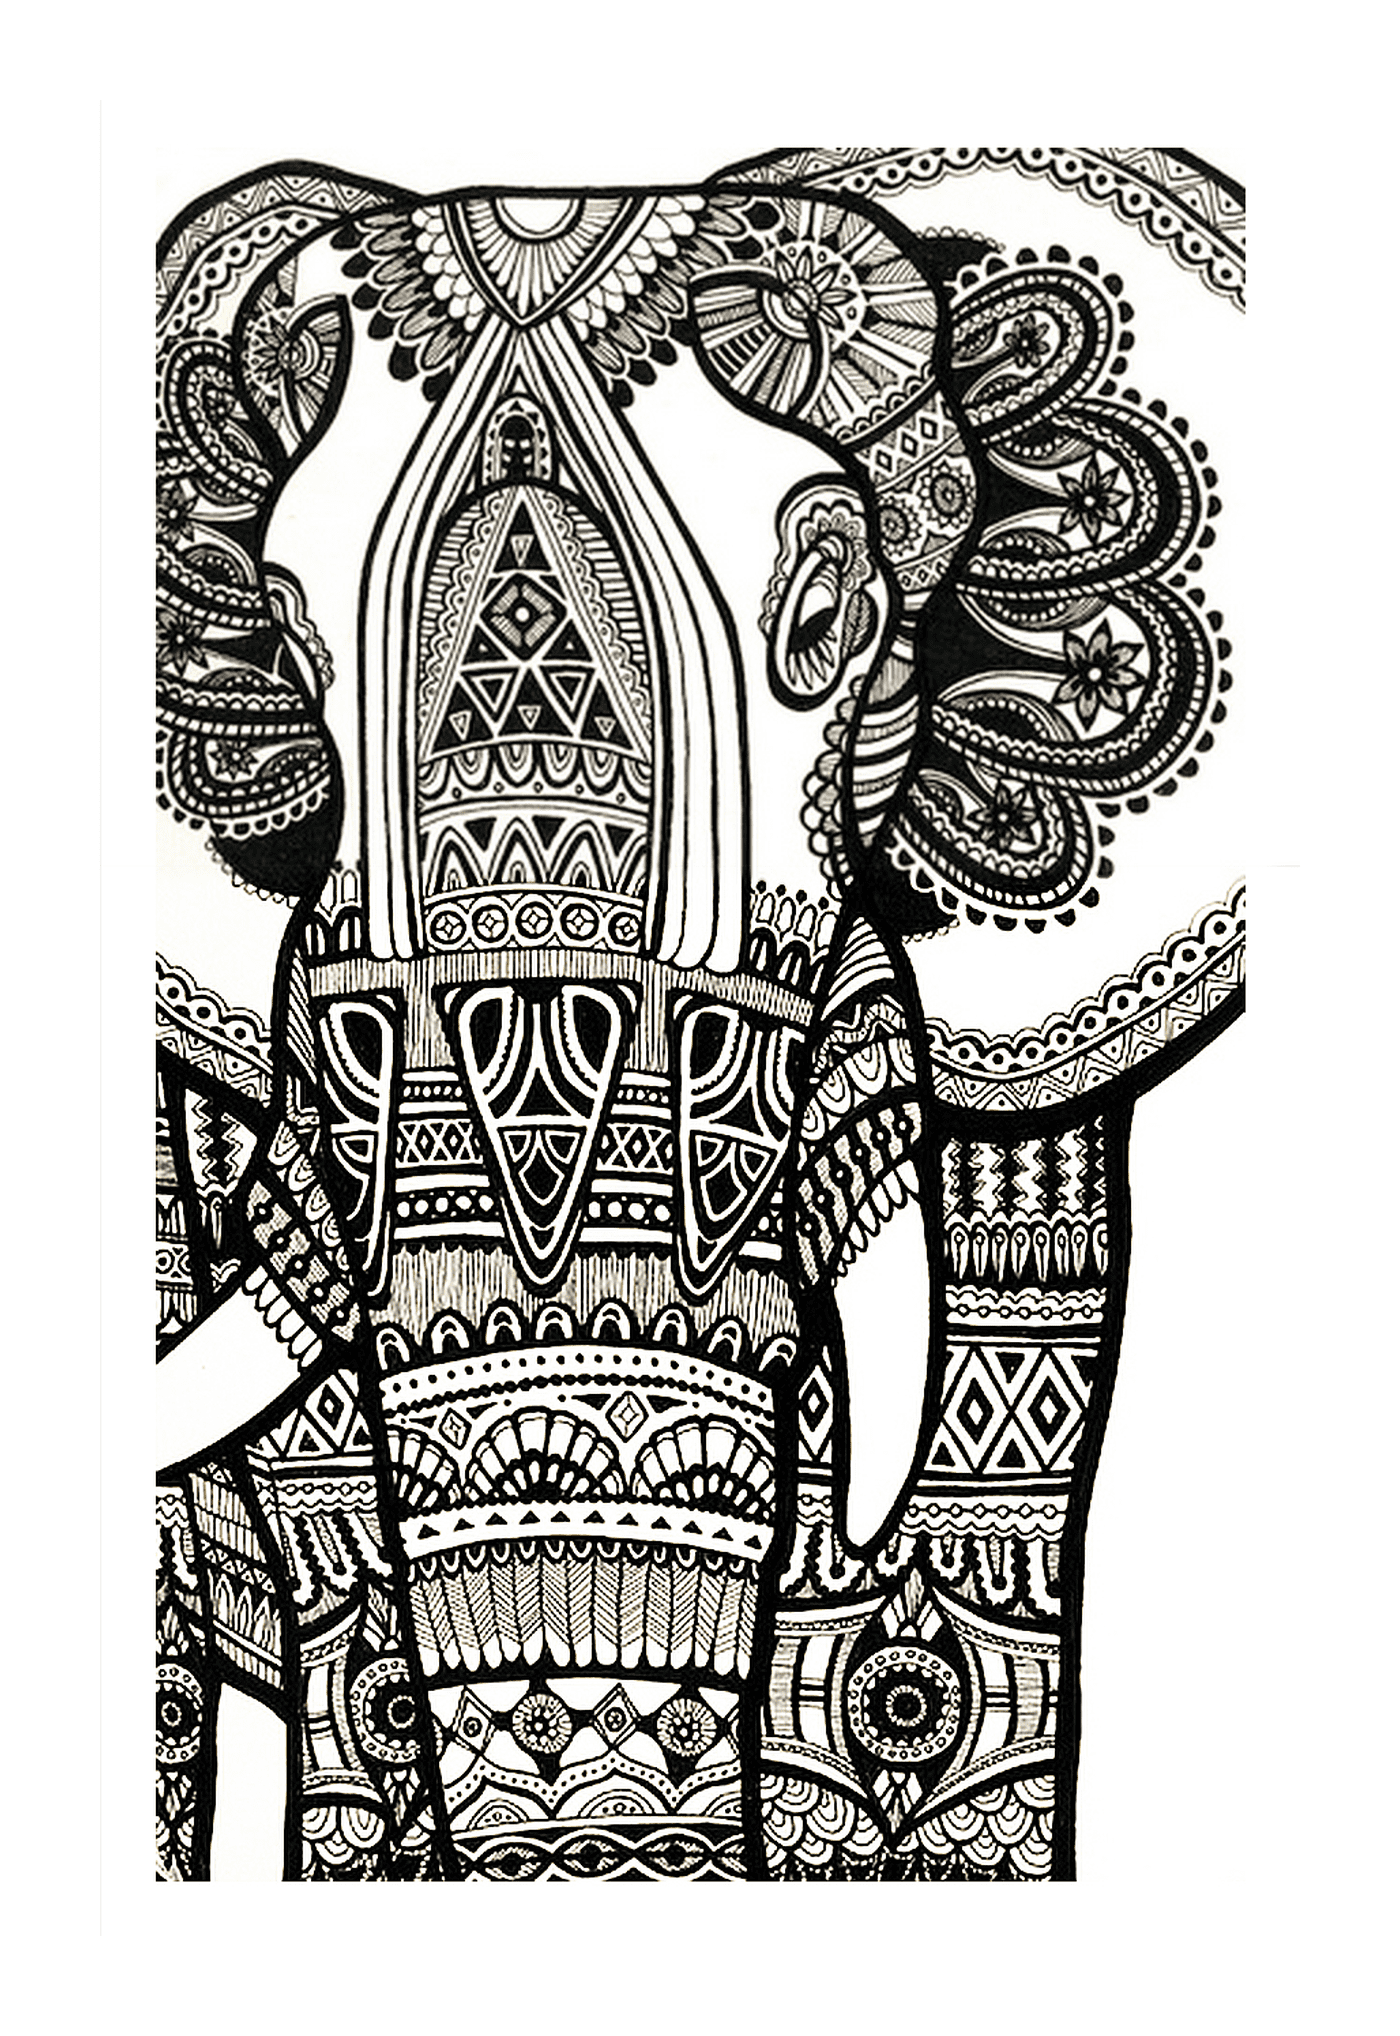  印度大象的复杂图画 